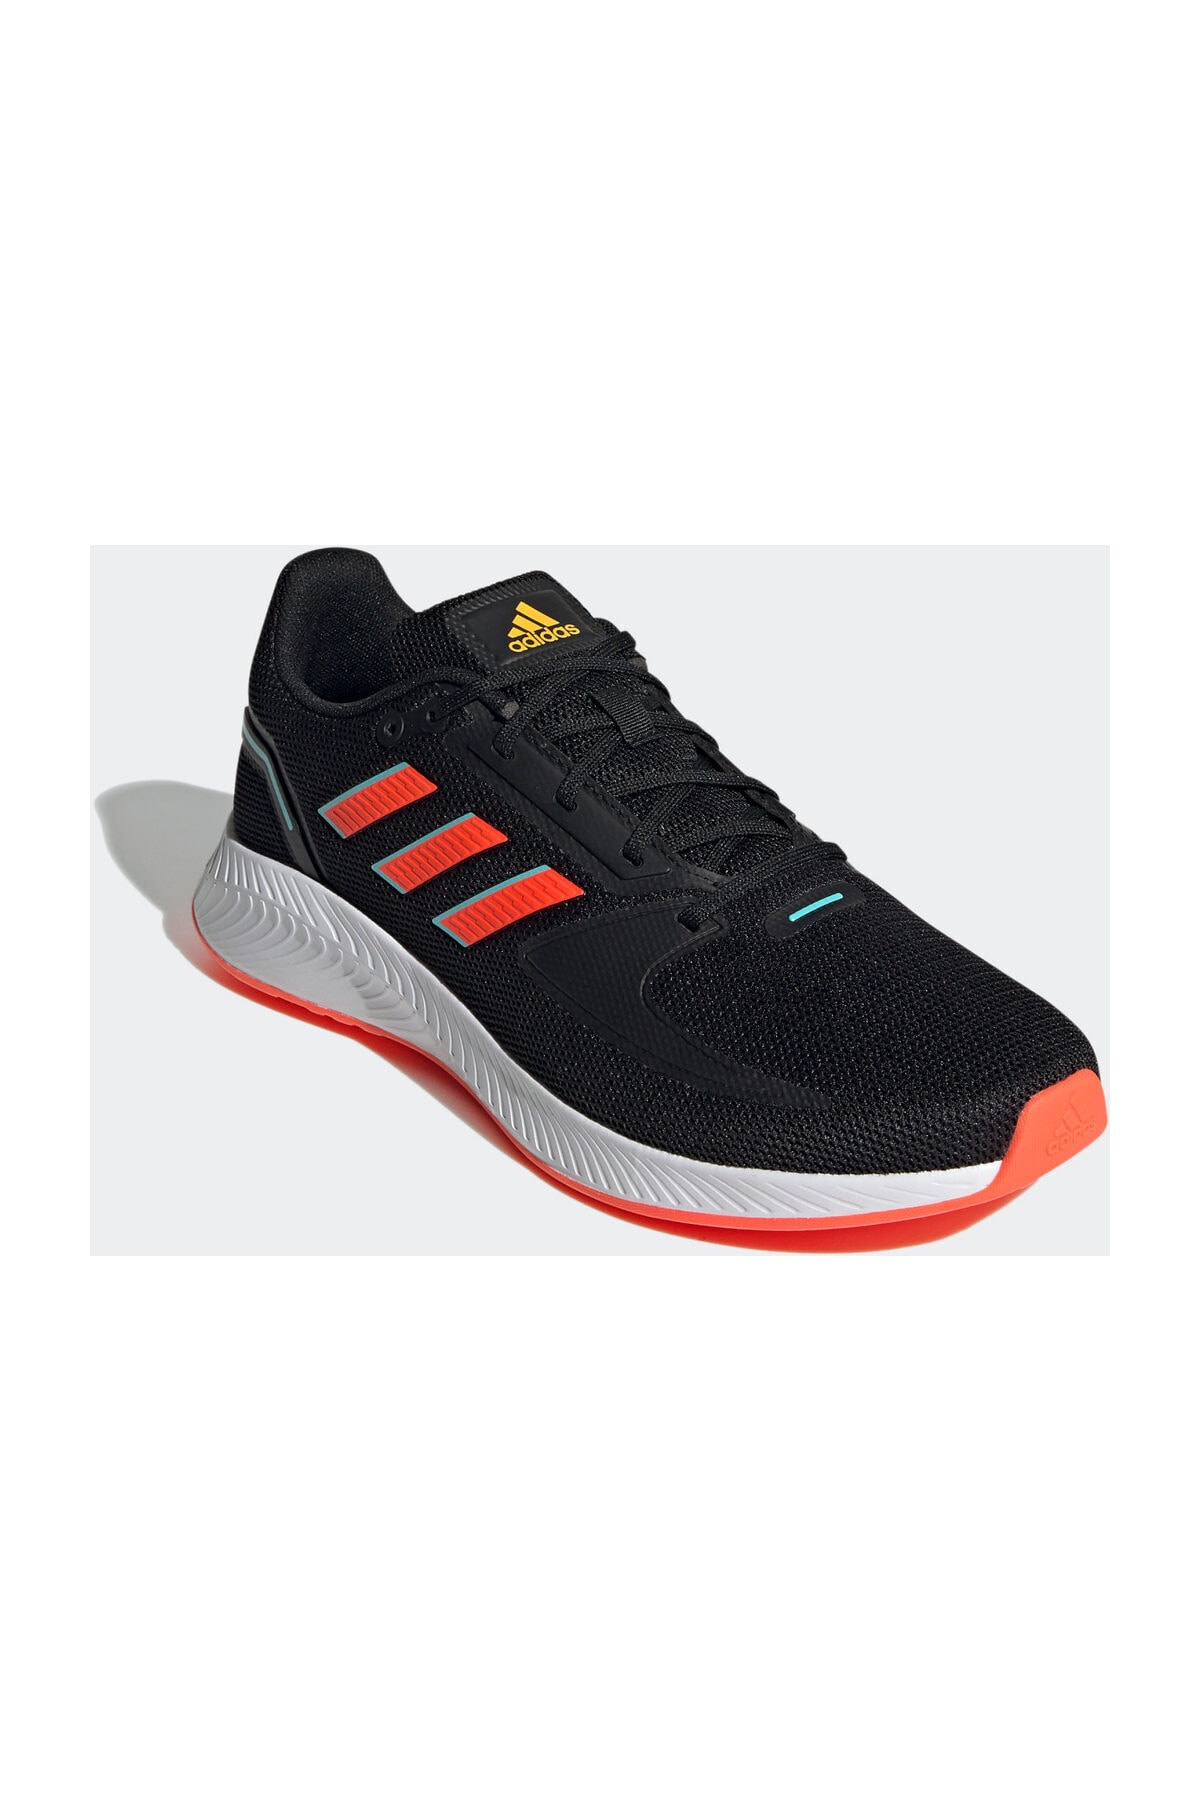 adidas Runfalcon 2.0 Erkek Siyah Koşu Ayakkabı - H04539